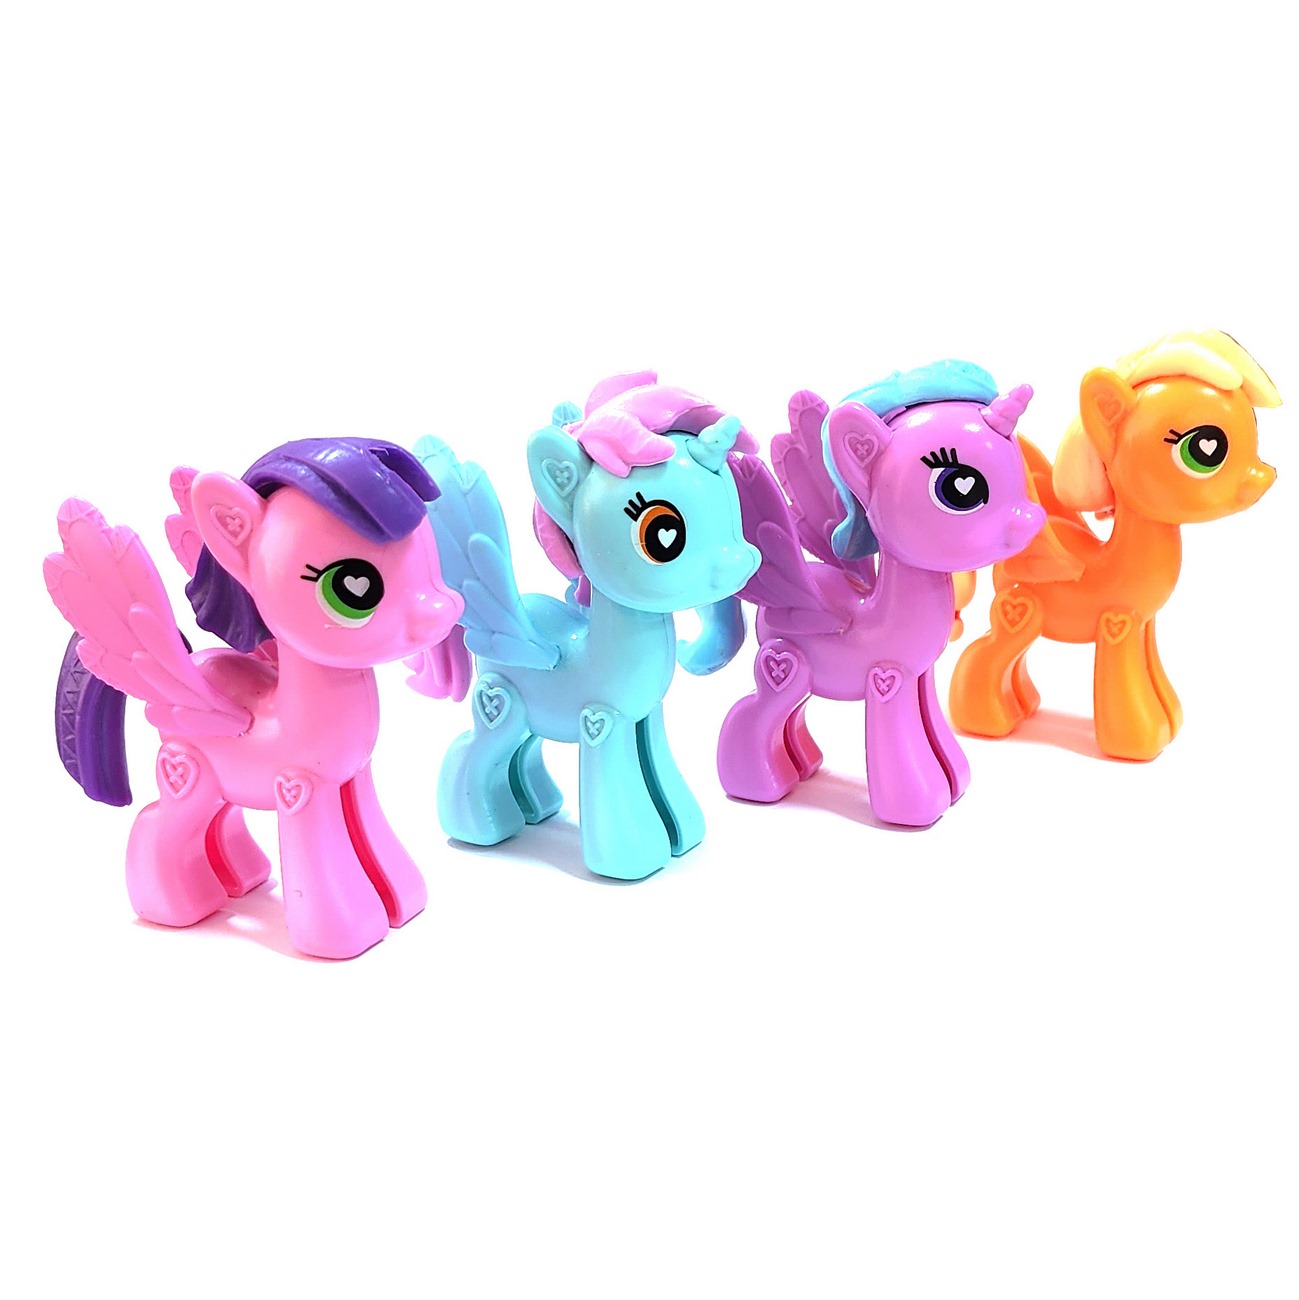 Unicornio Pony Coleccion Juguete X 4 Unidades + Stickers